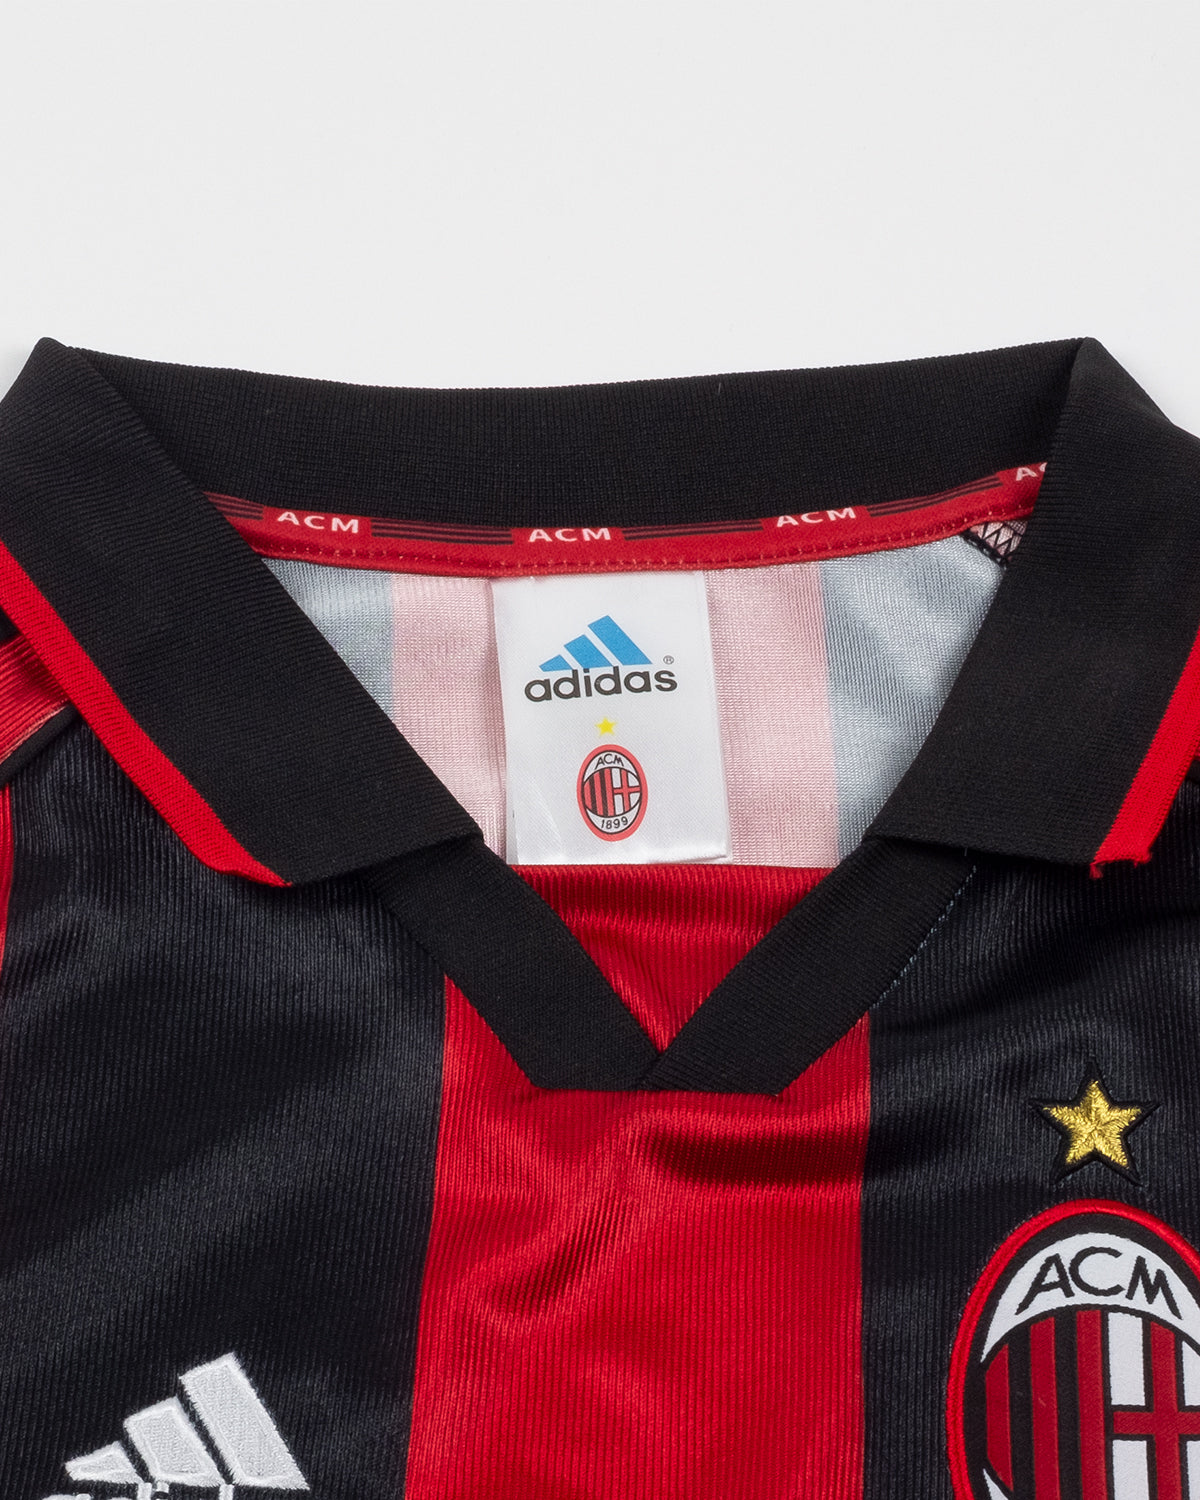 AC Milan 1998-99 Home Kit